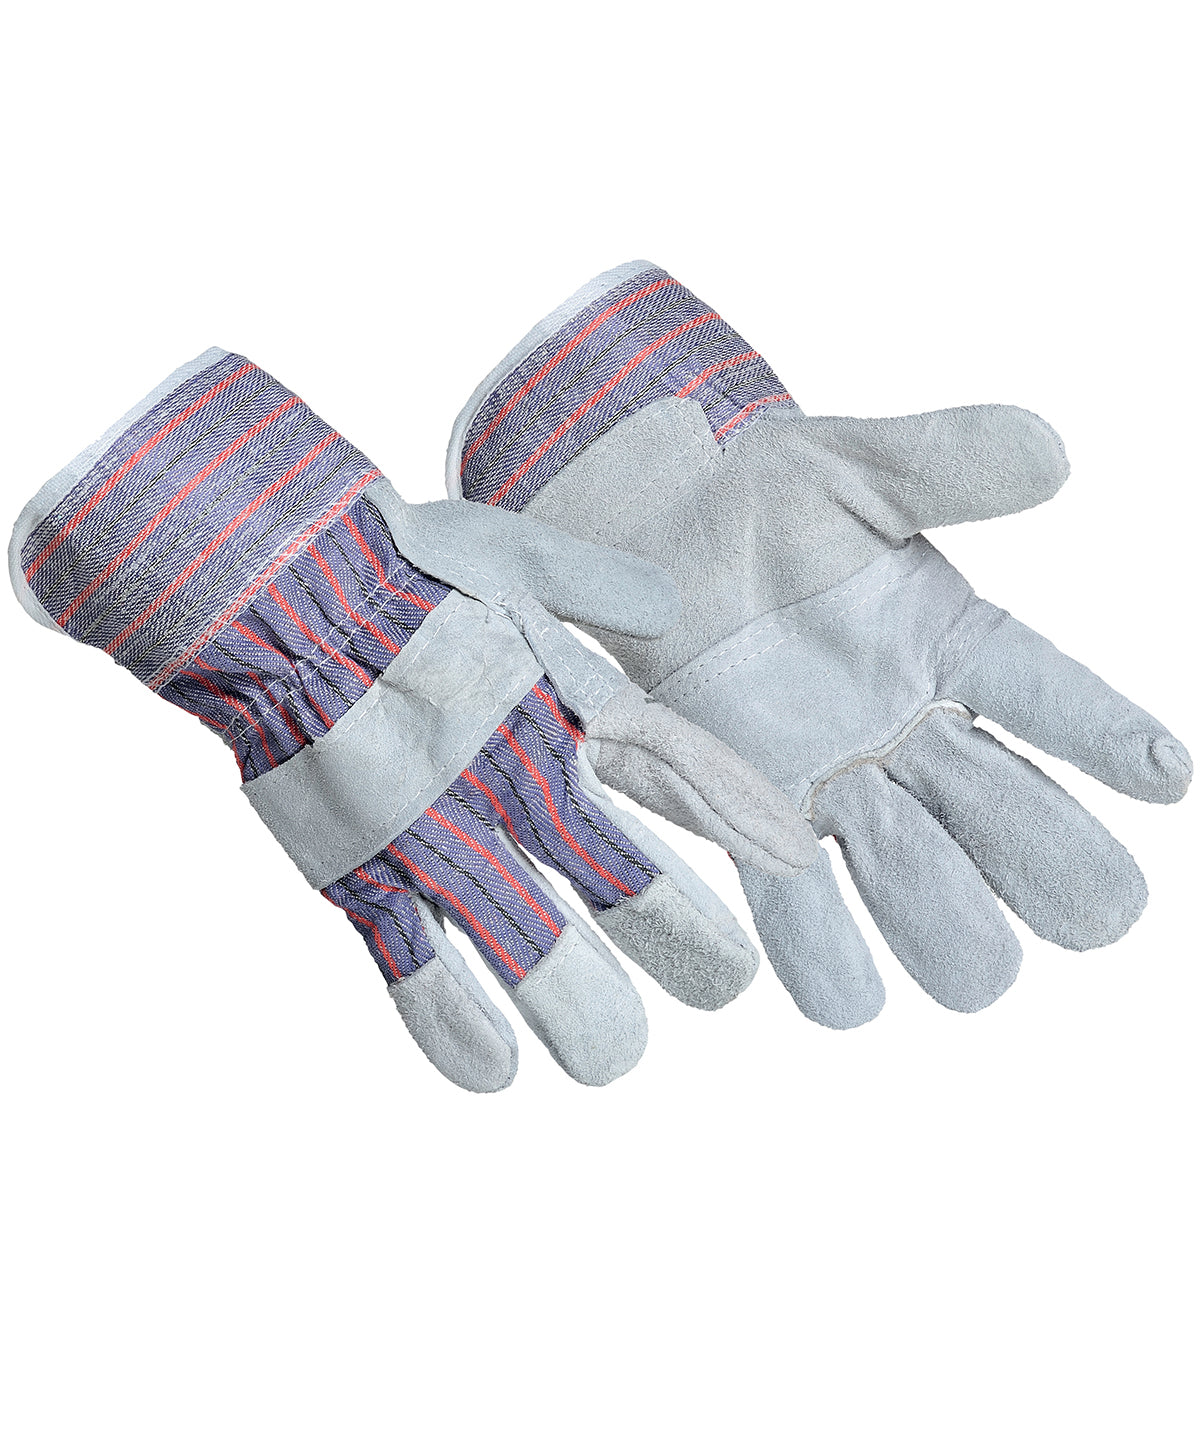 Hanska - Canadian Rigger Glove (A210)